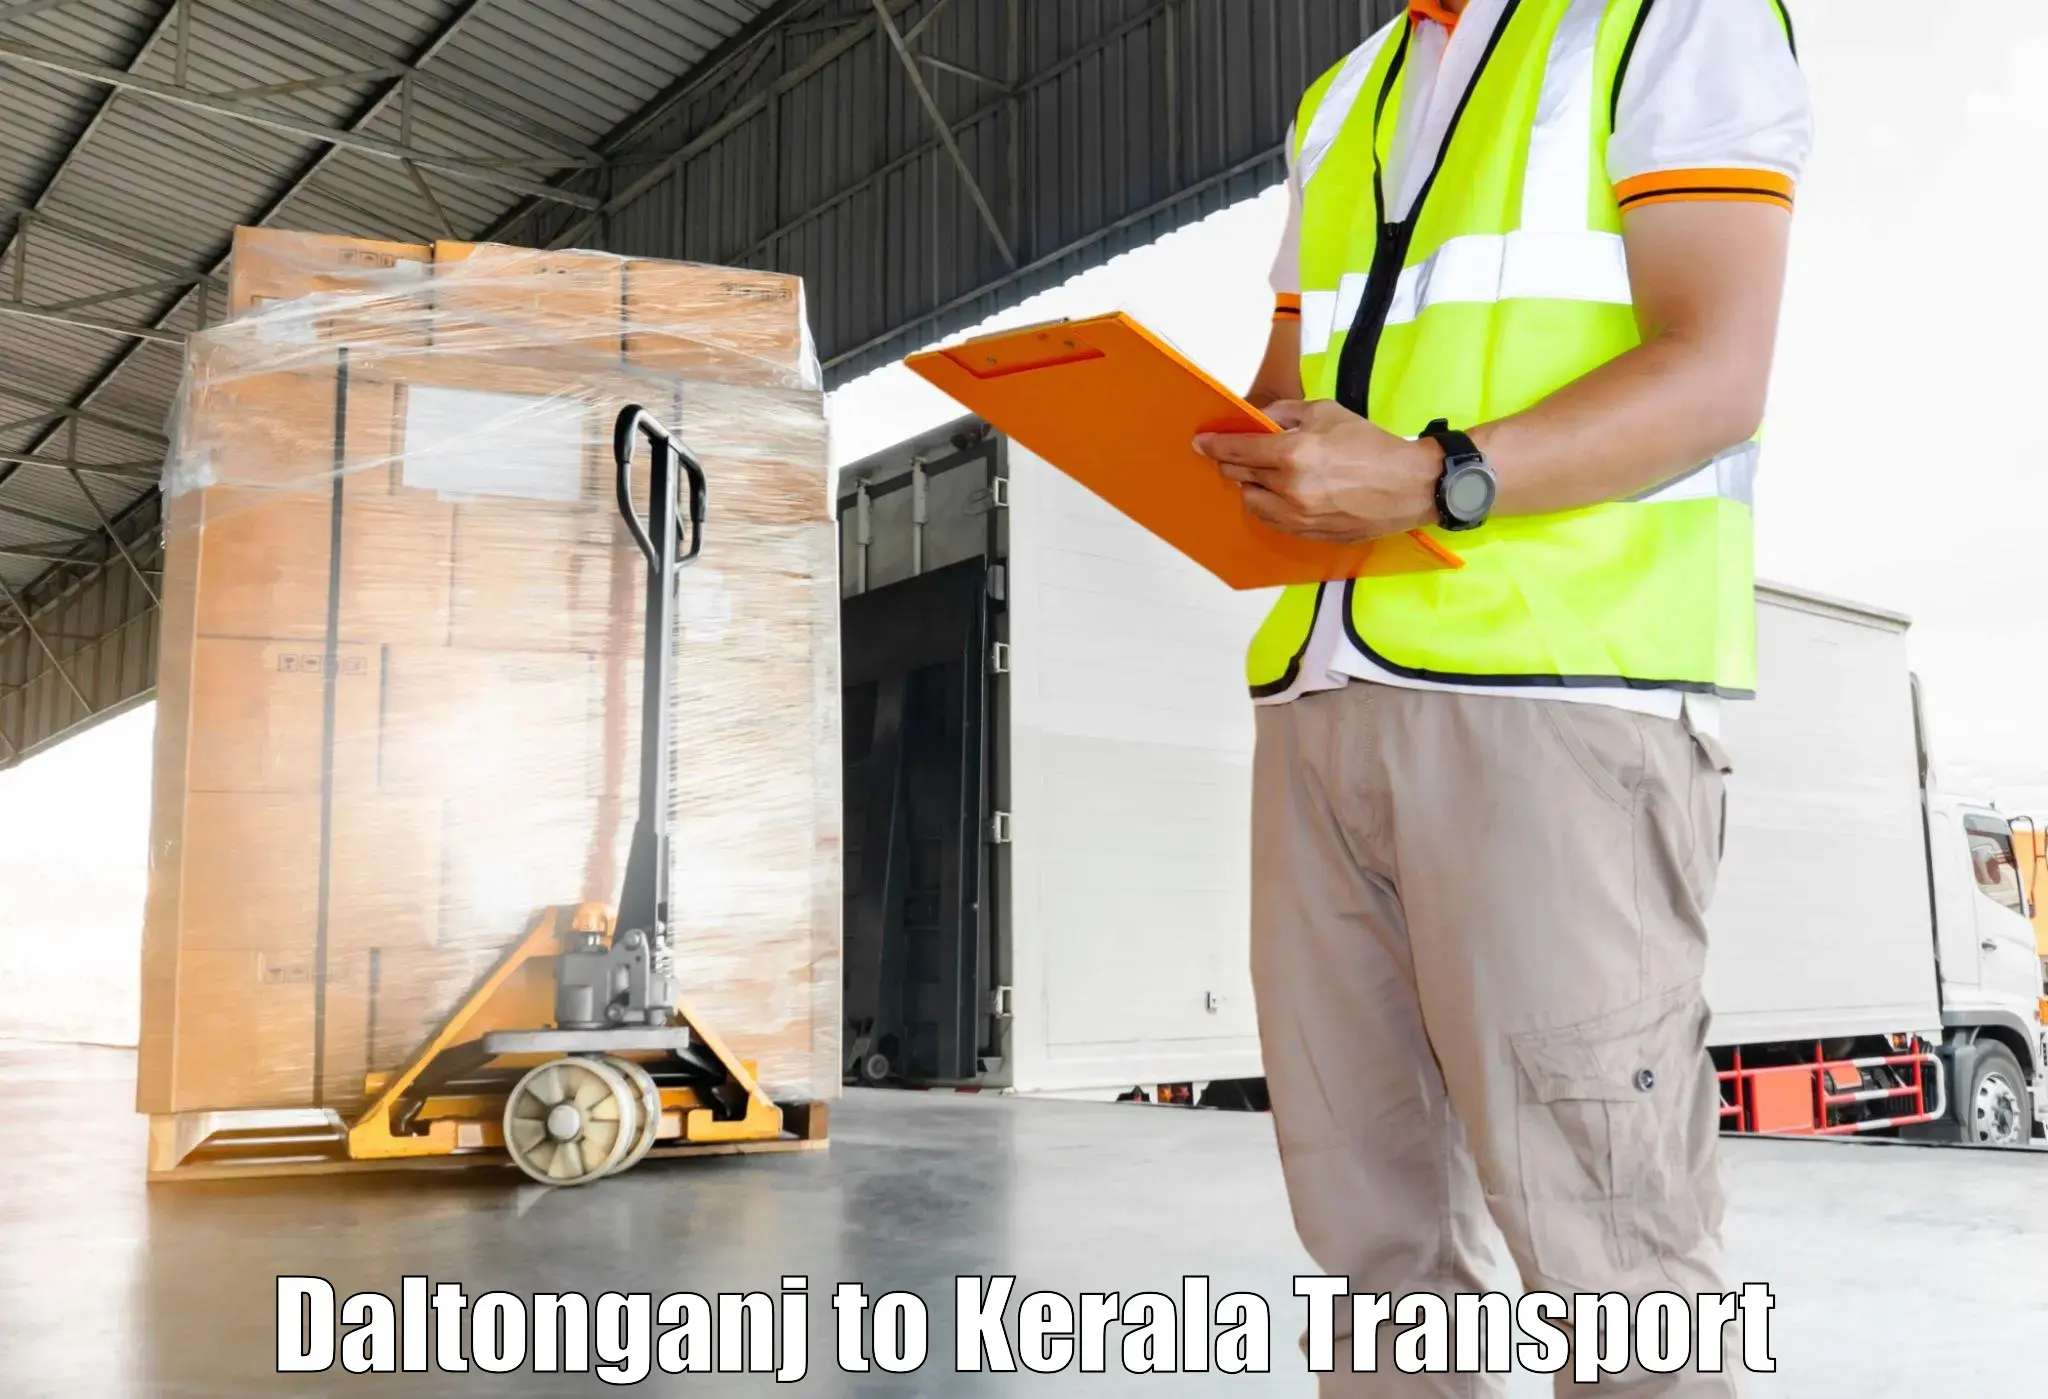 Vehicle transport services Daltonganj to Kerala